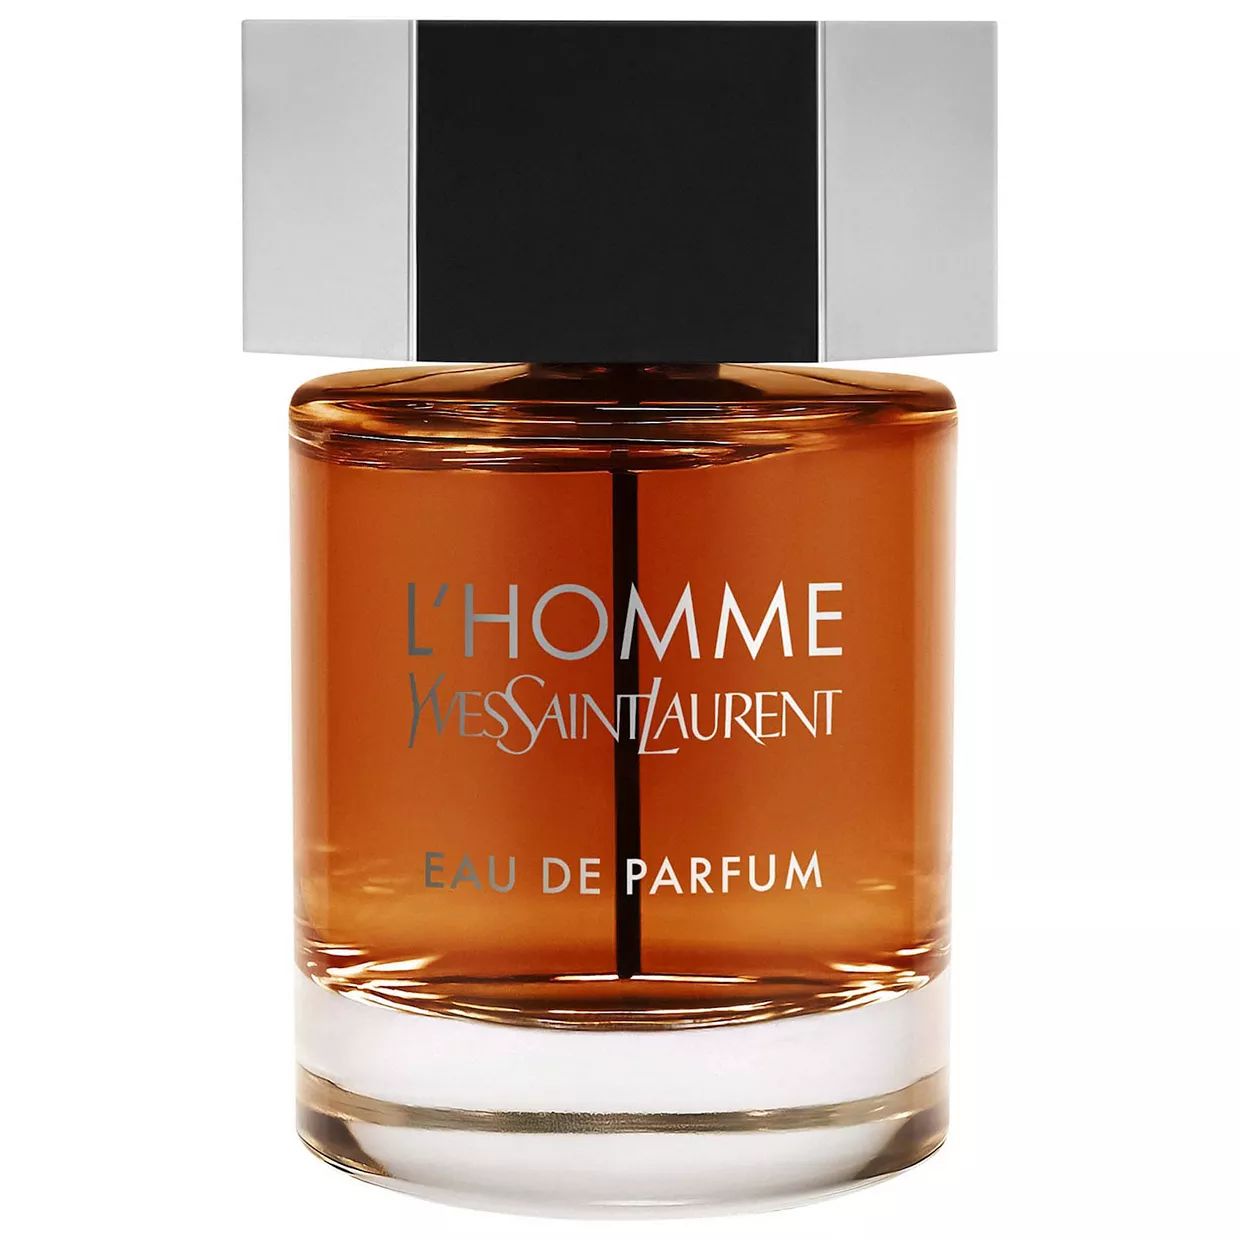 Yves Saint Laurent L'Homme Eau de Parfum | Kohl's